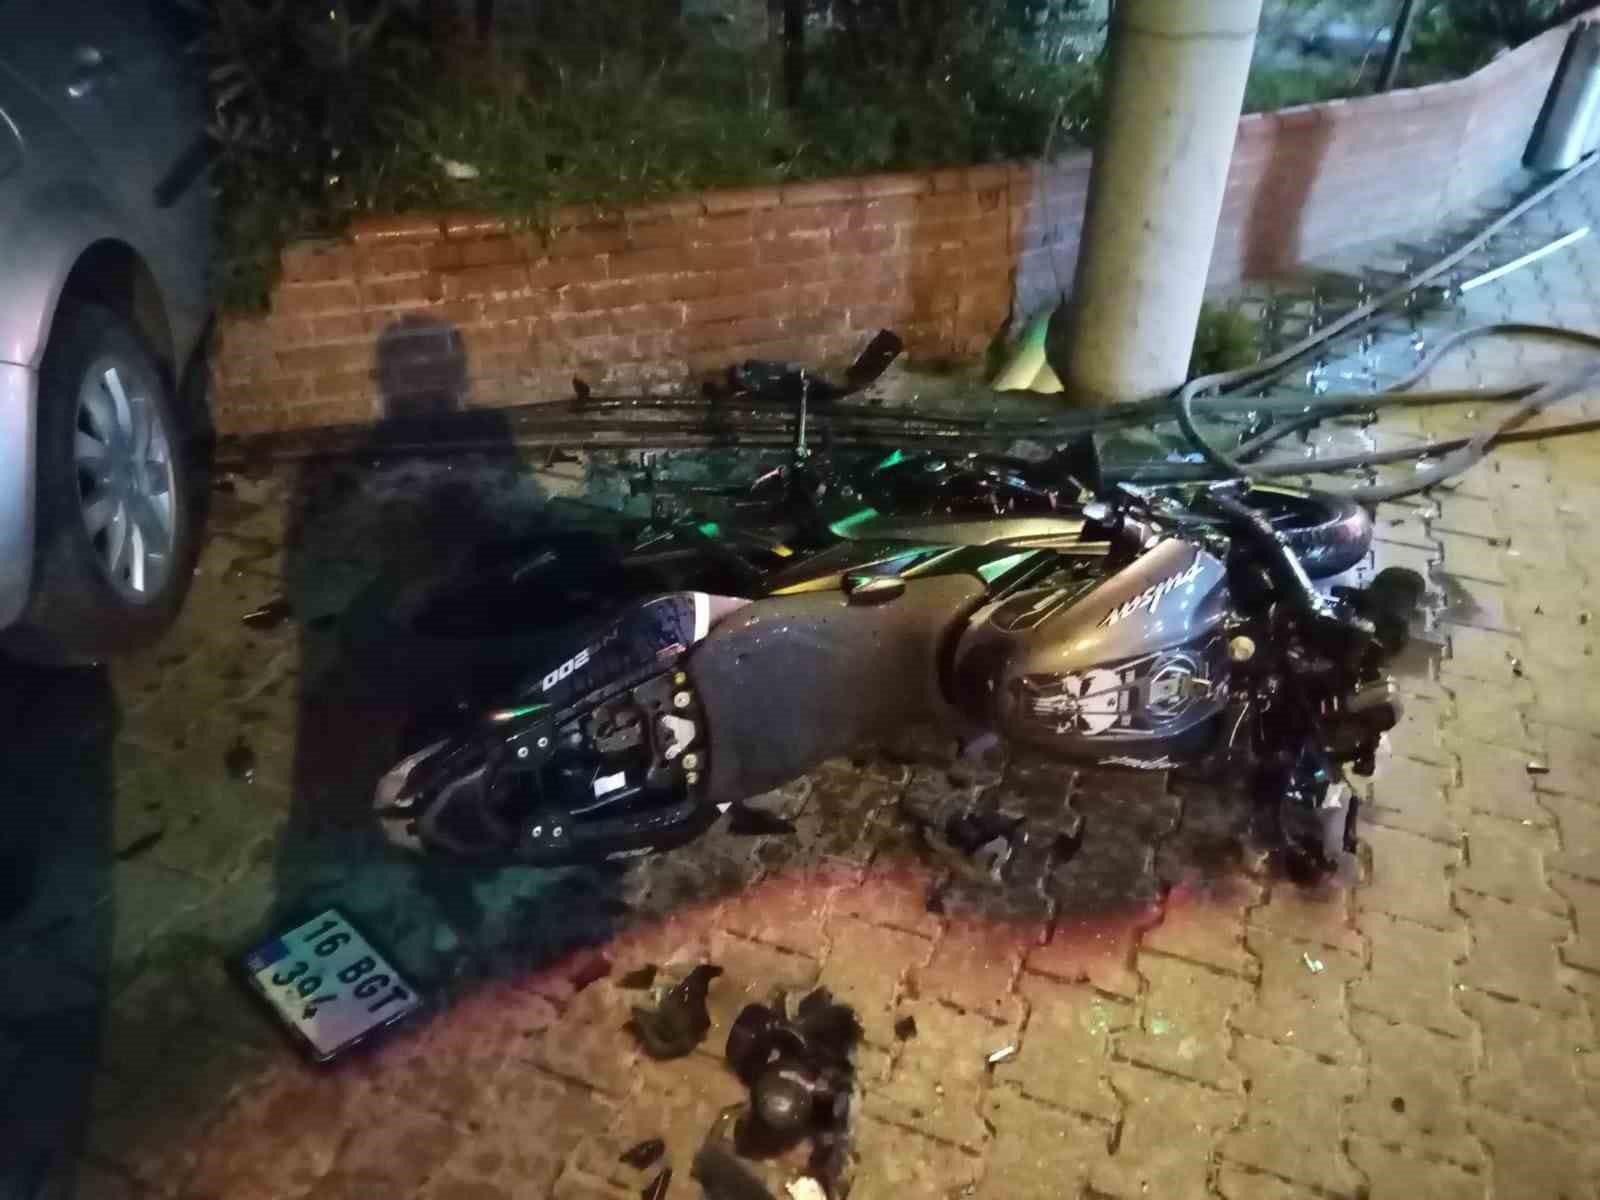 Otomobille çarpışan motosiklet sürücüsü hayatını kaybetti